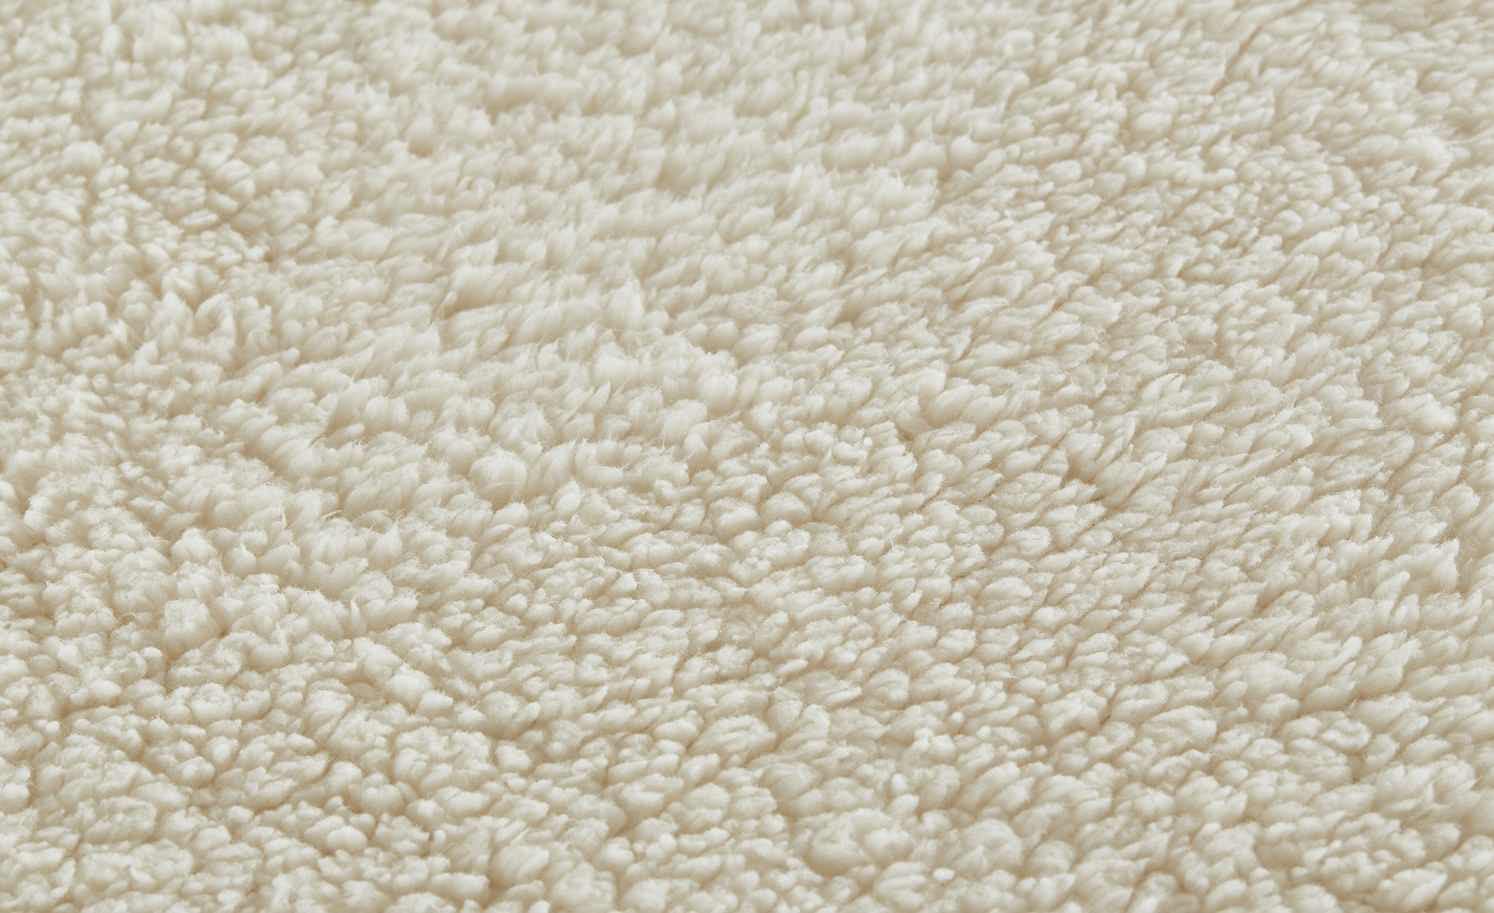 La Vida Kuschel-Decke Flanell Fleece in Grau, 150 x 200 cm Wohndecke mit Sherpa Rückseite für Couch & Sofa, warm, weich & kuschelig, 100% Polyester, Öko-Tex Standard 100